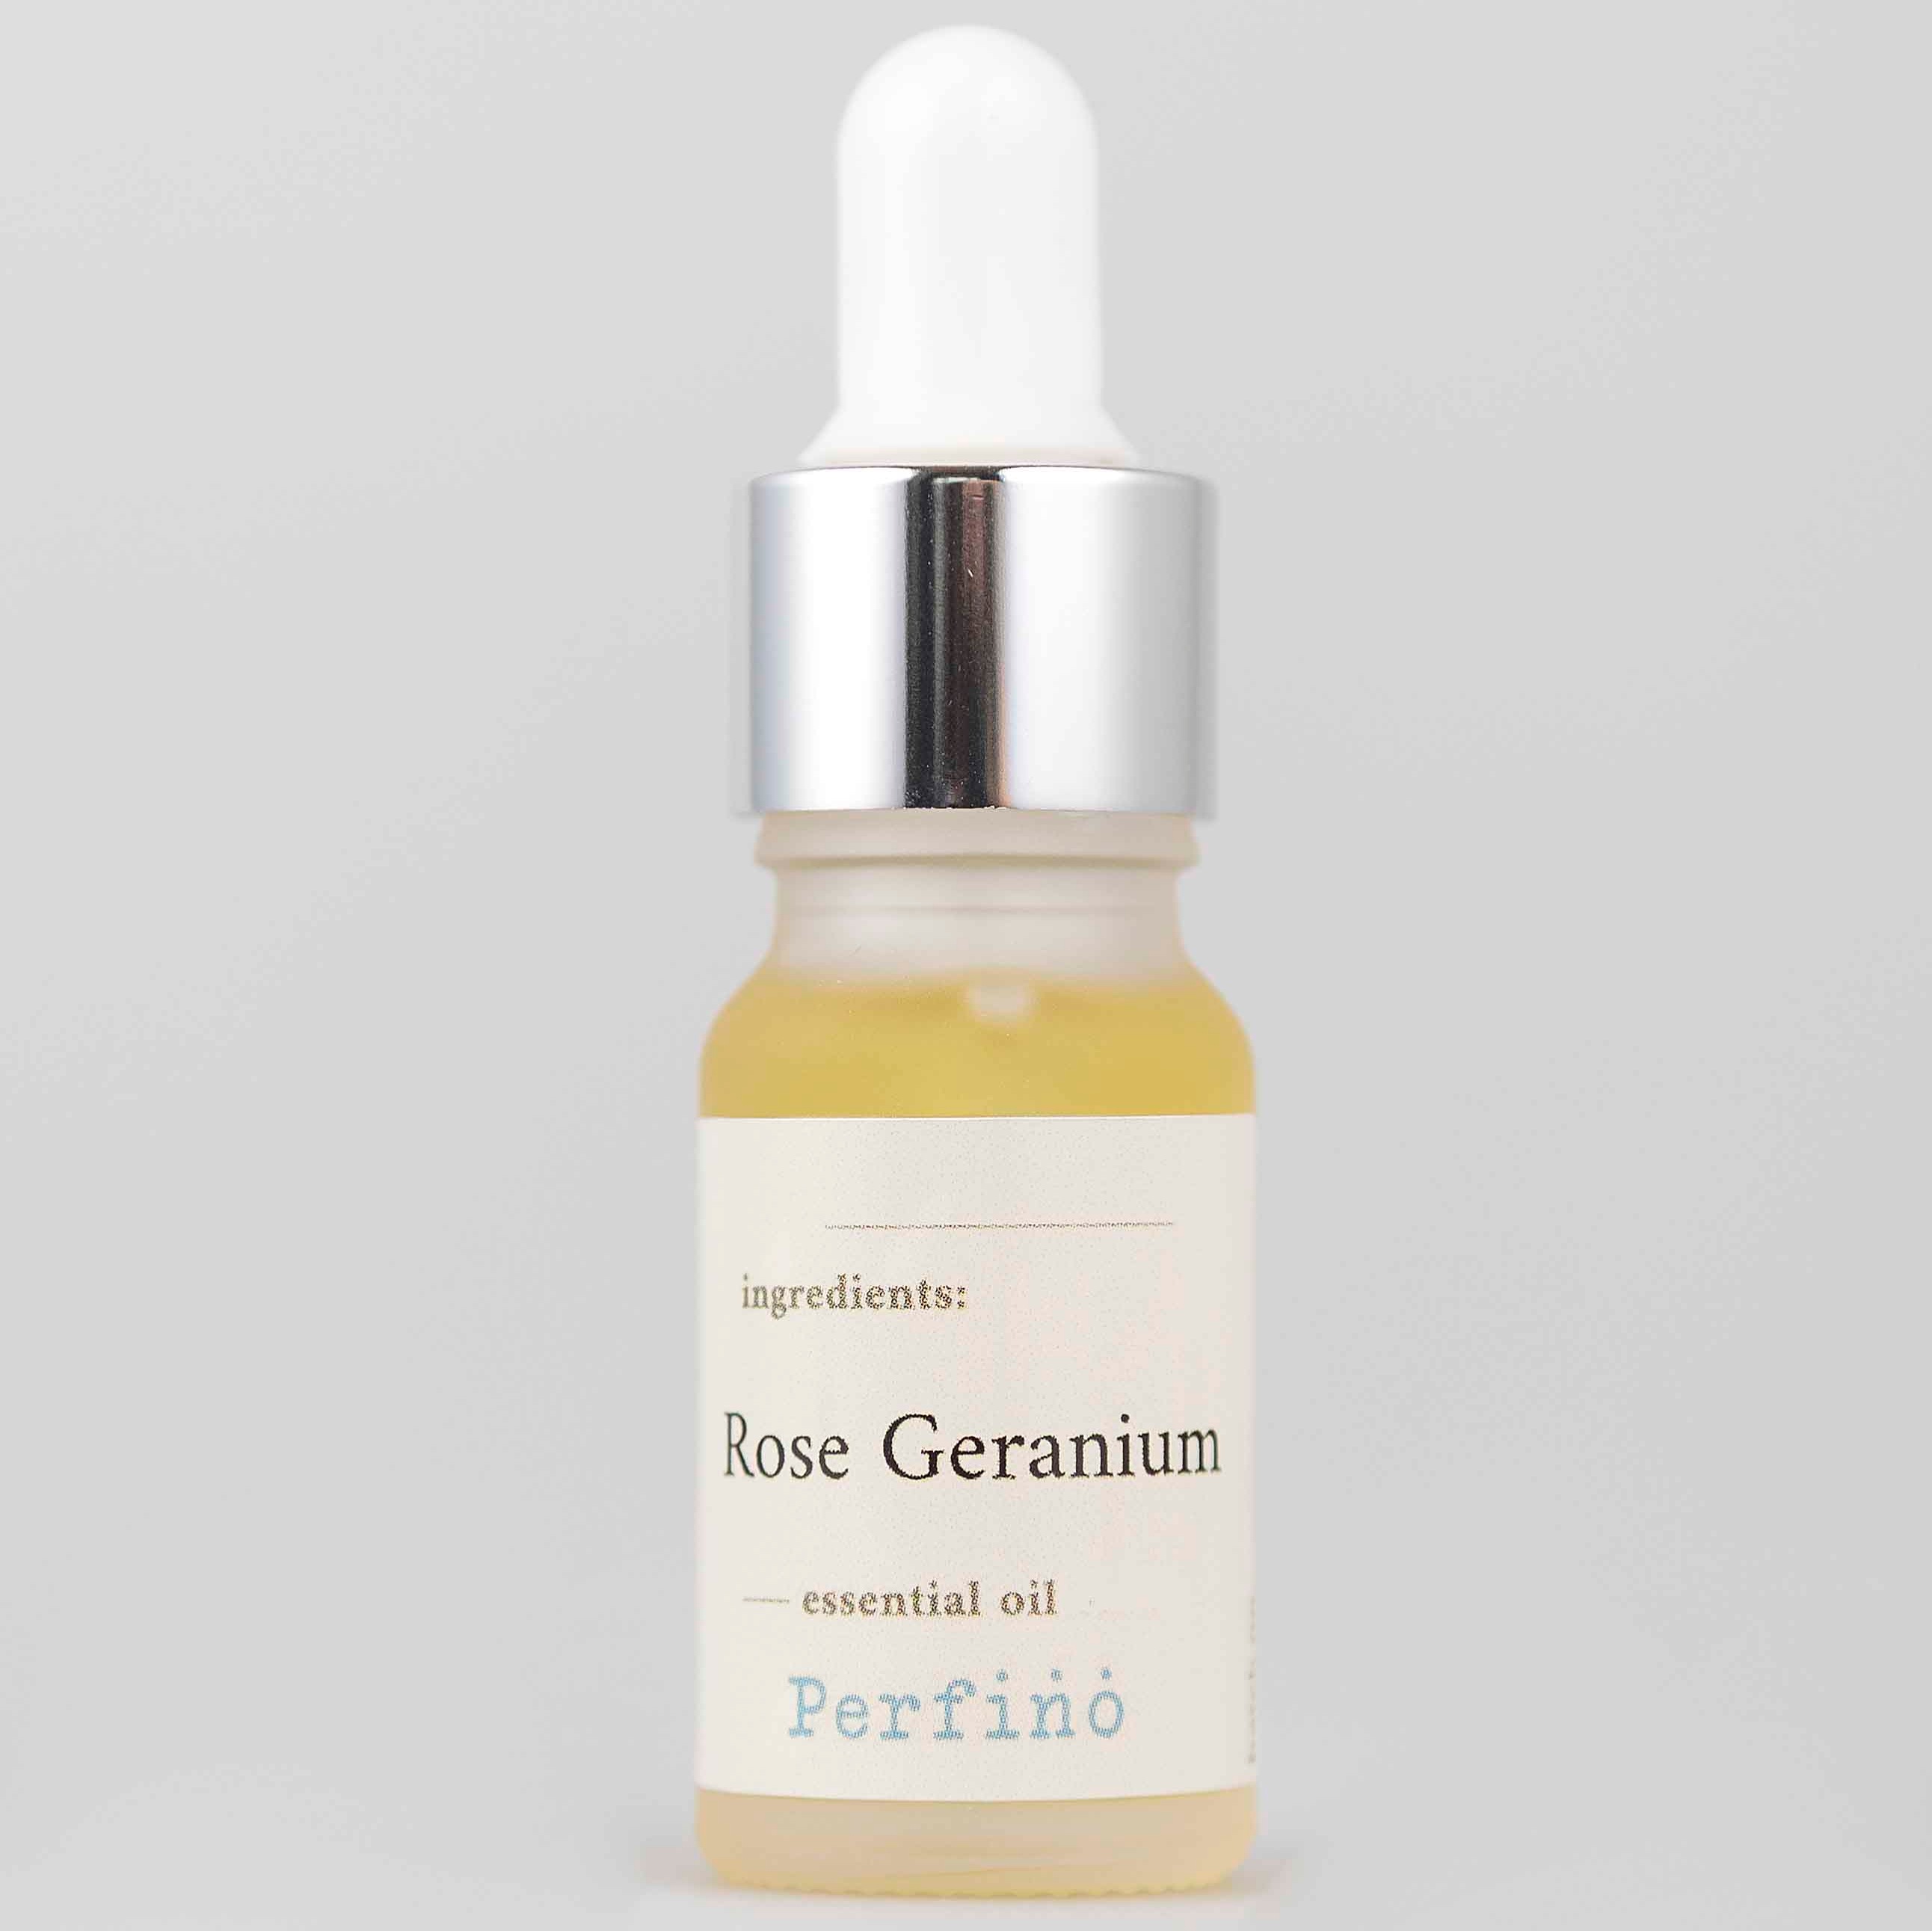 Geranium Essential Oil (10 ml)